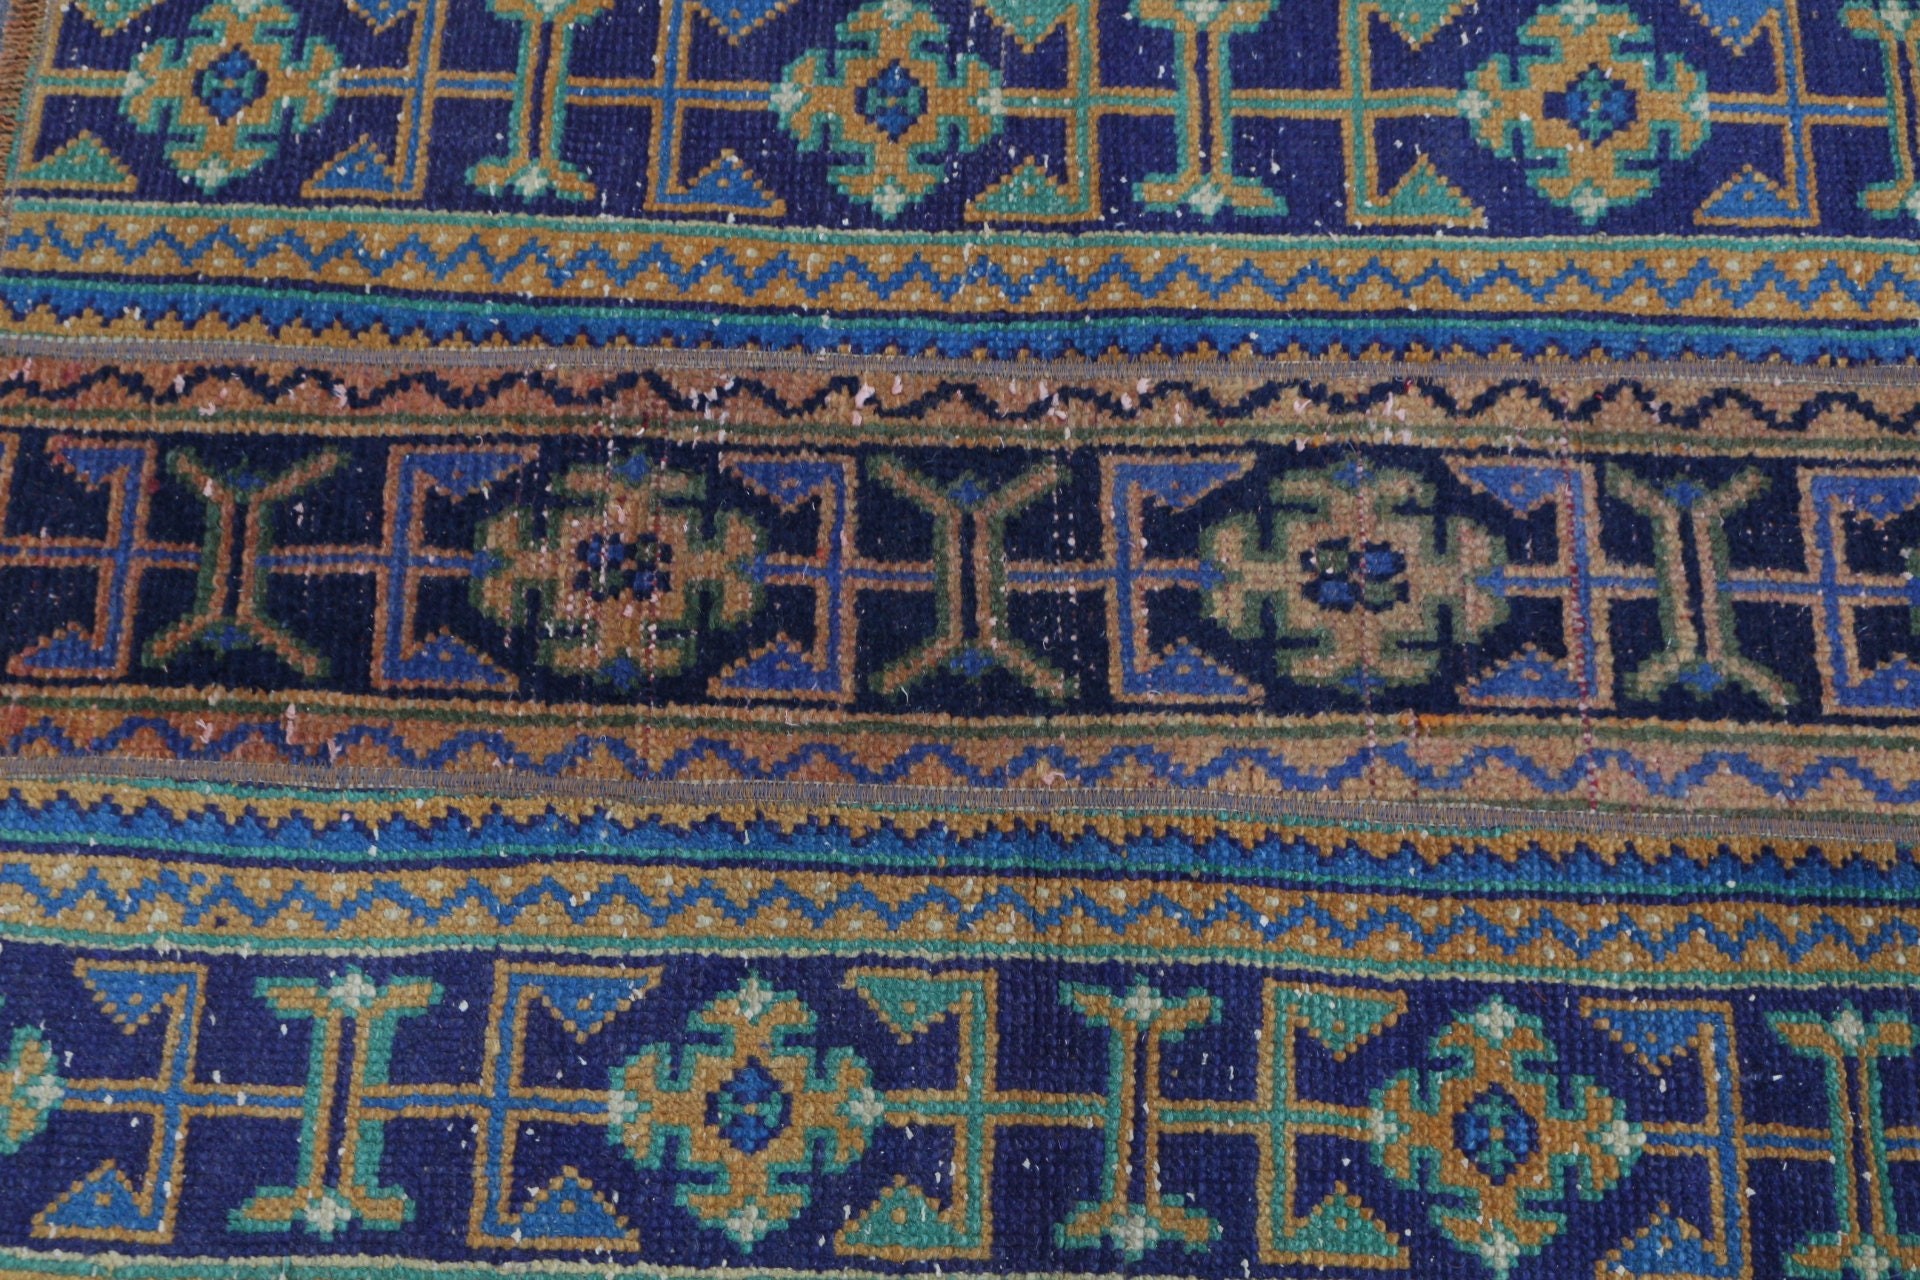 Blue Oushak Rug, 2.4x3.4 ft Small Rug, Nursery Rug, Cool Rugs, Turkish Rugs, Rugs for Bedroom, Door Mat Rug, Vintage Rug, Moroccan Rug